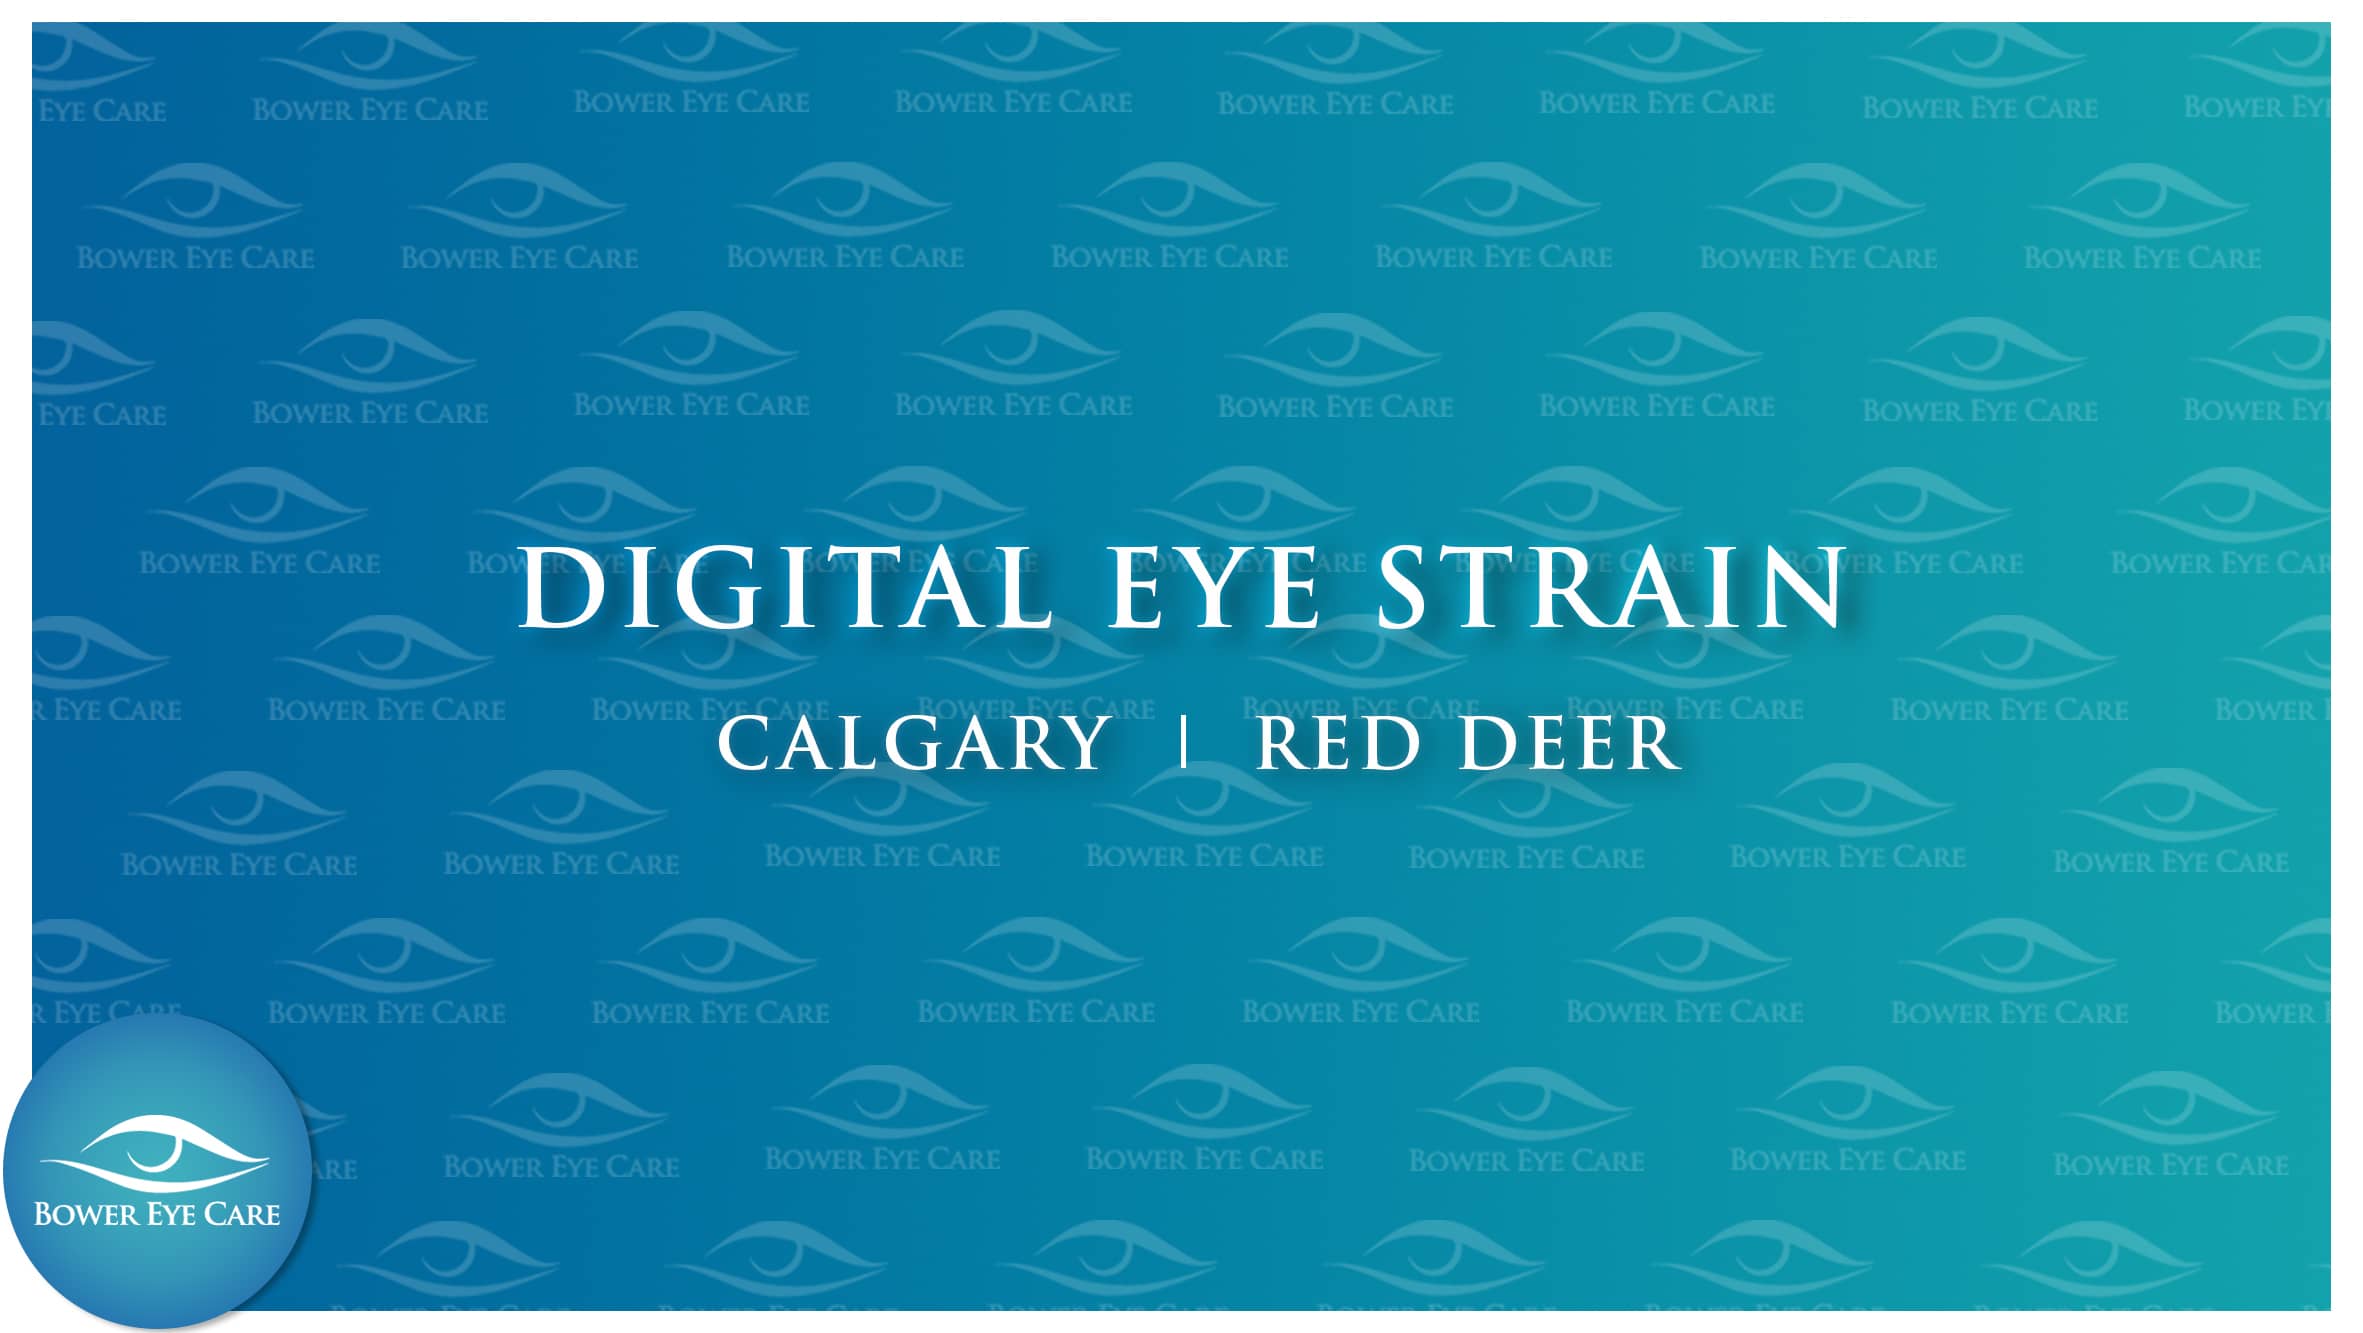 Digital Eye Strain